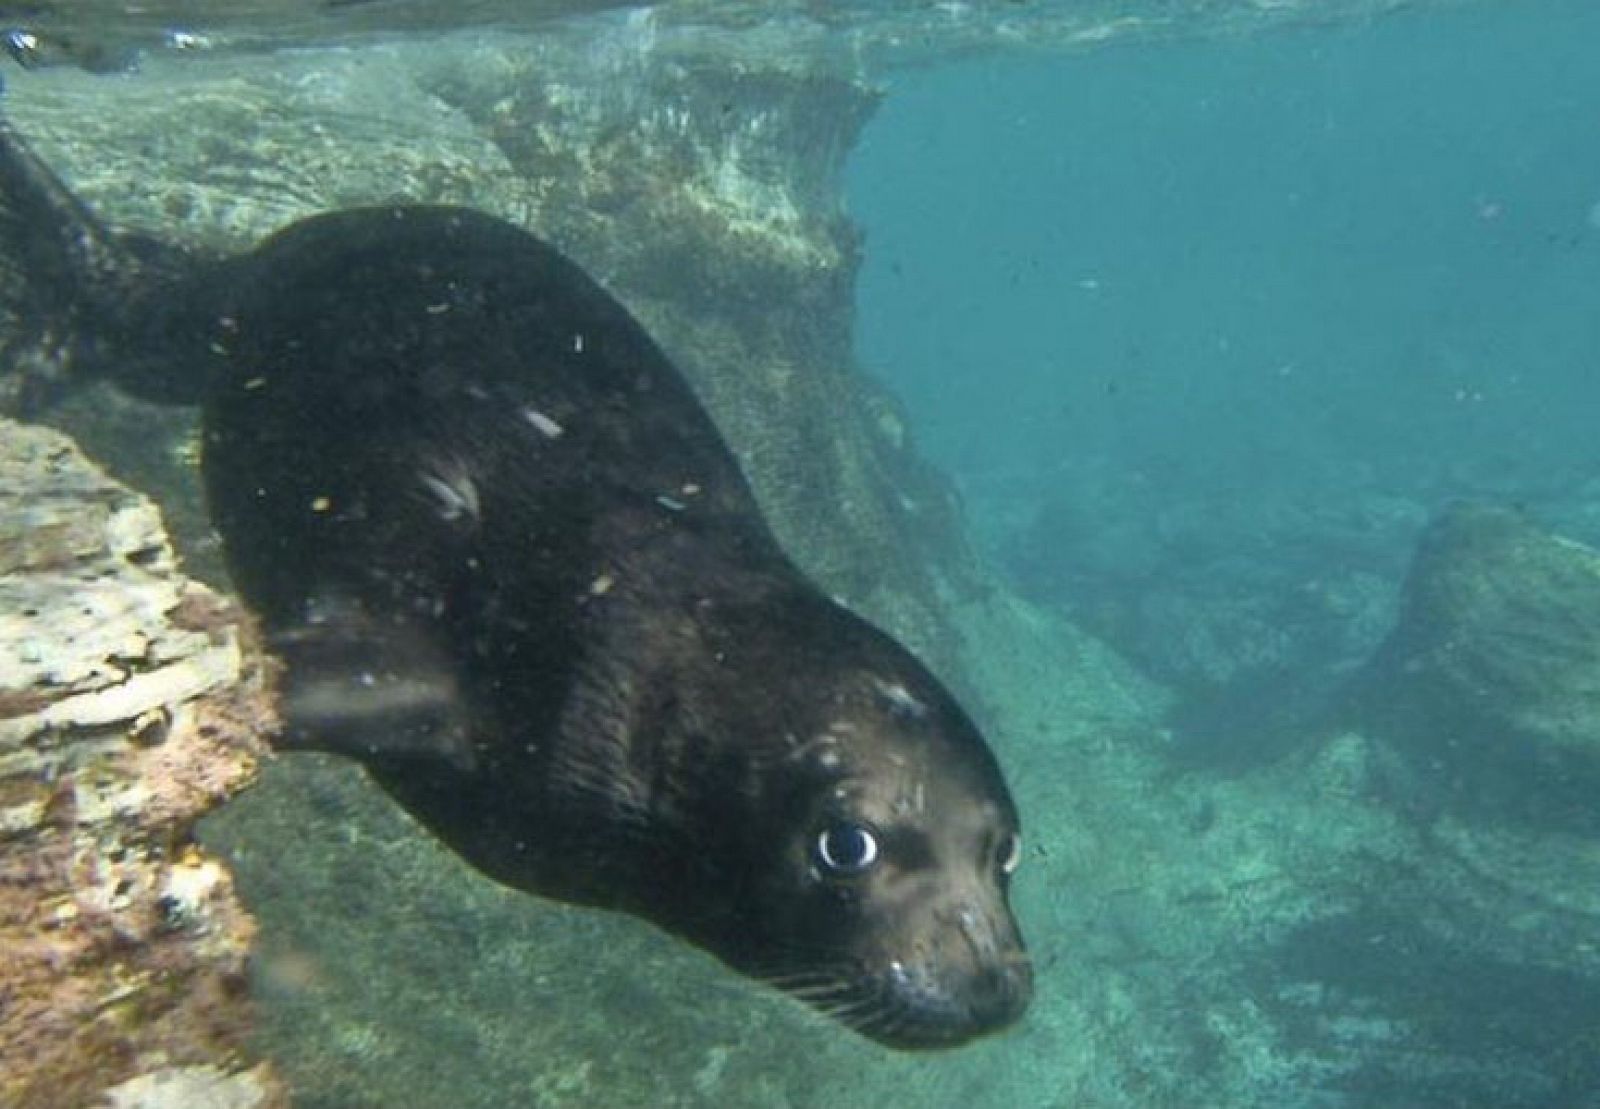 Unas de las focas monjes del Mediterráneo sumergida en el mar